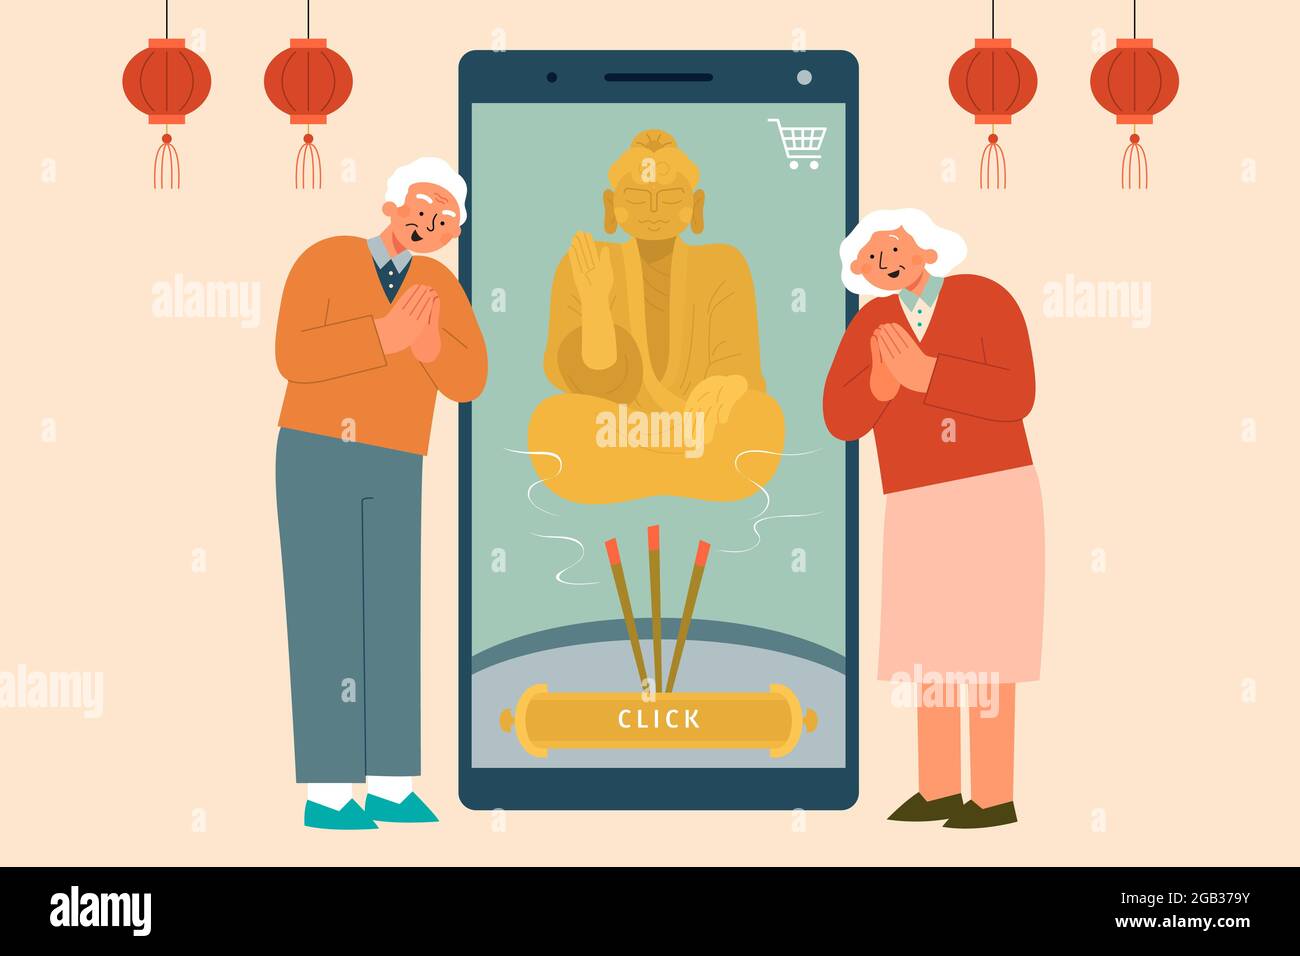 Flache Abbildung von älteren Menschen, die neben einem Mobiltelefon mit der Online-App für Gottesdienste stehen Stock Vektor